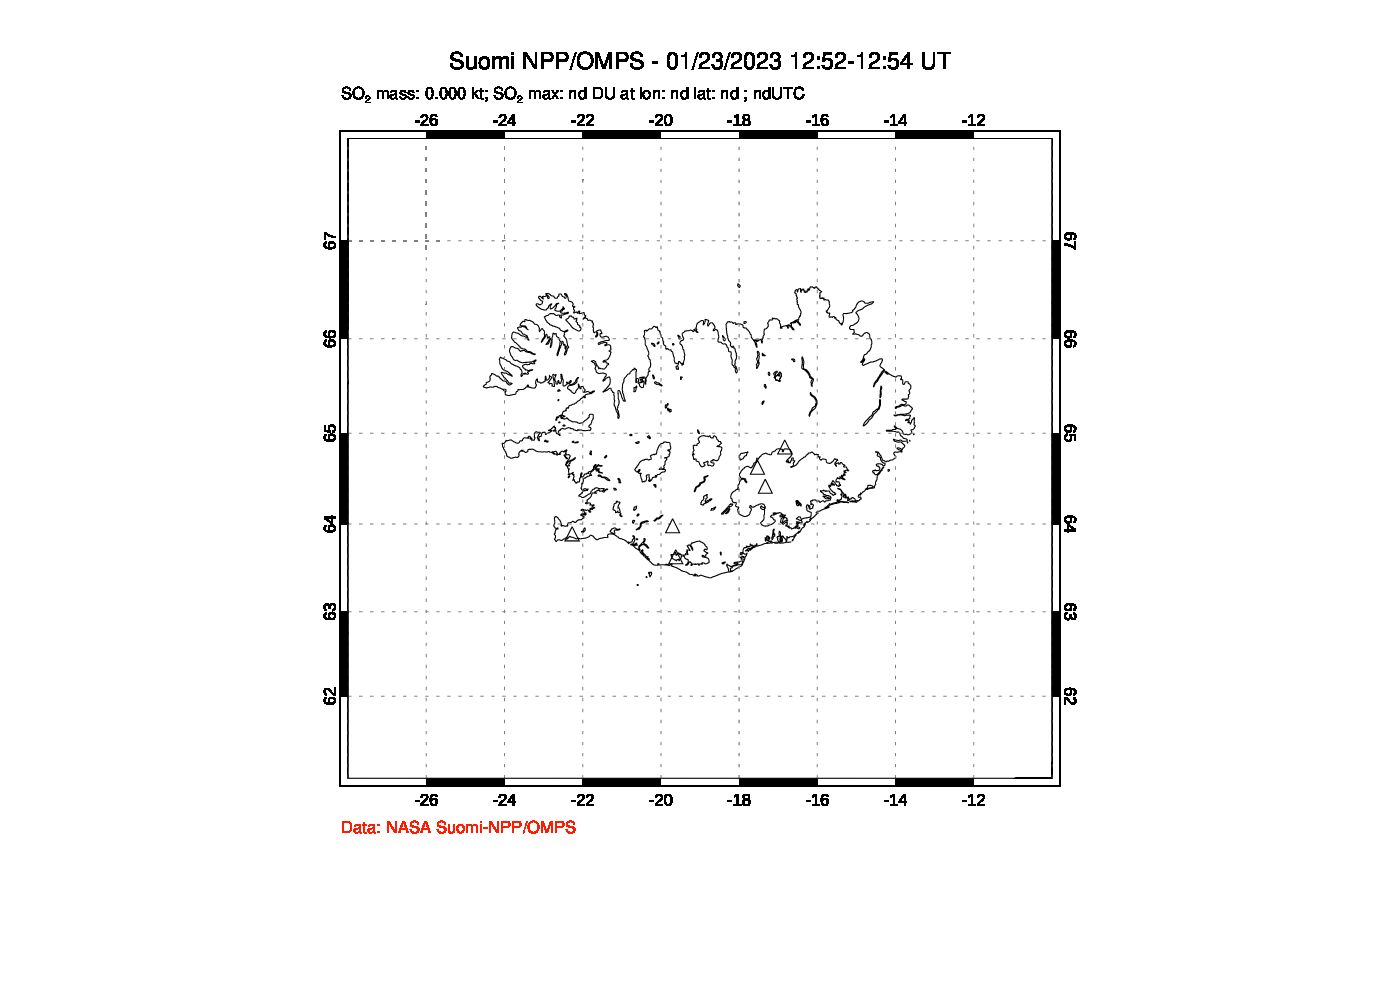 A sulfur dioxide image over Iceland on Jan 23, 2023.